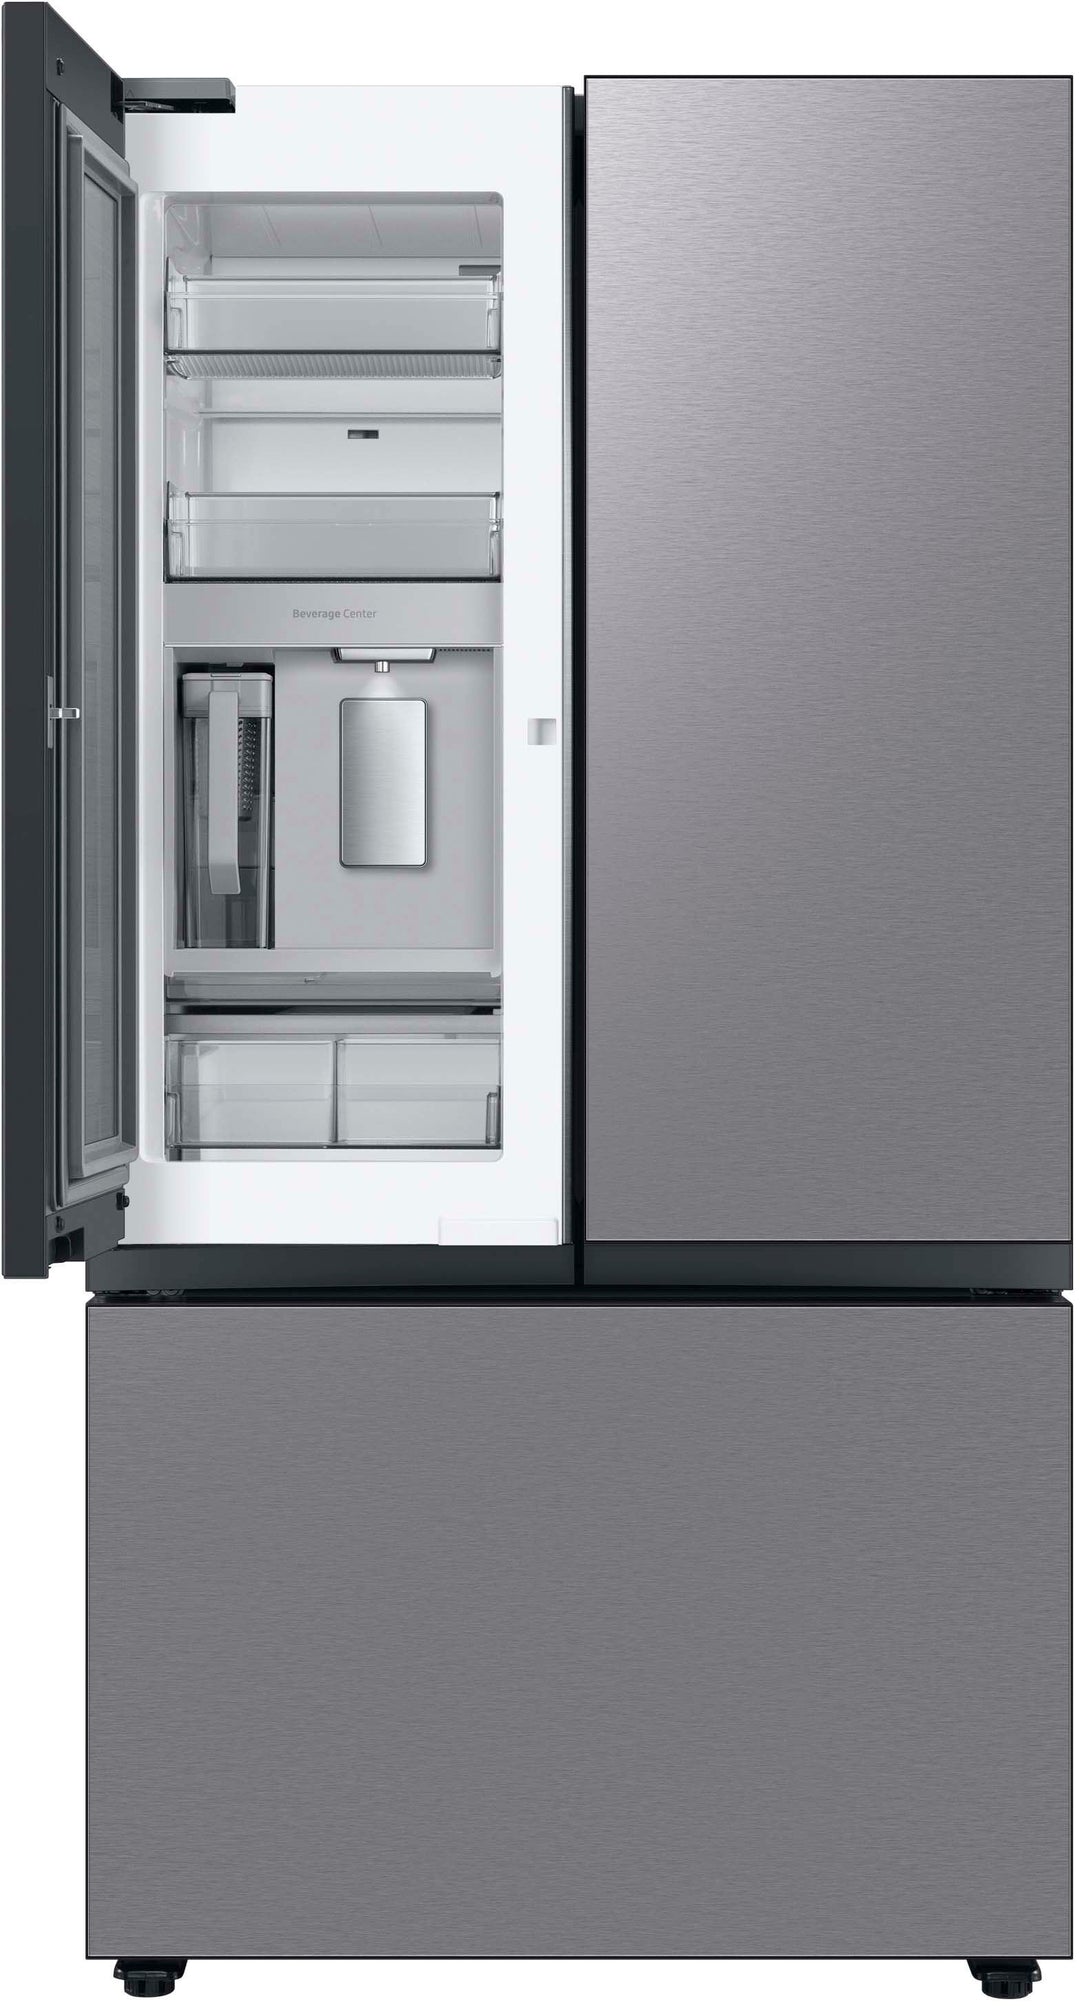 Samsung - Bespoke 30 cu. ft. 3-Door French Door Refrigerator with Beverage Center - Stainless steel_3